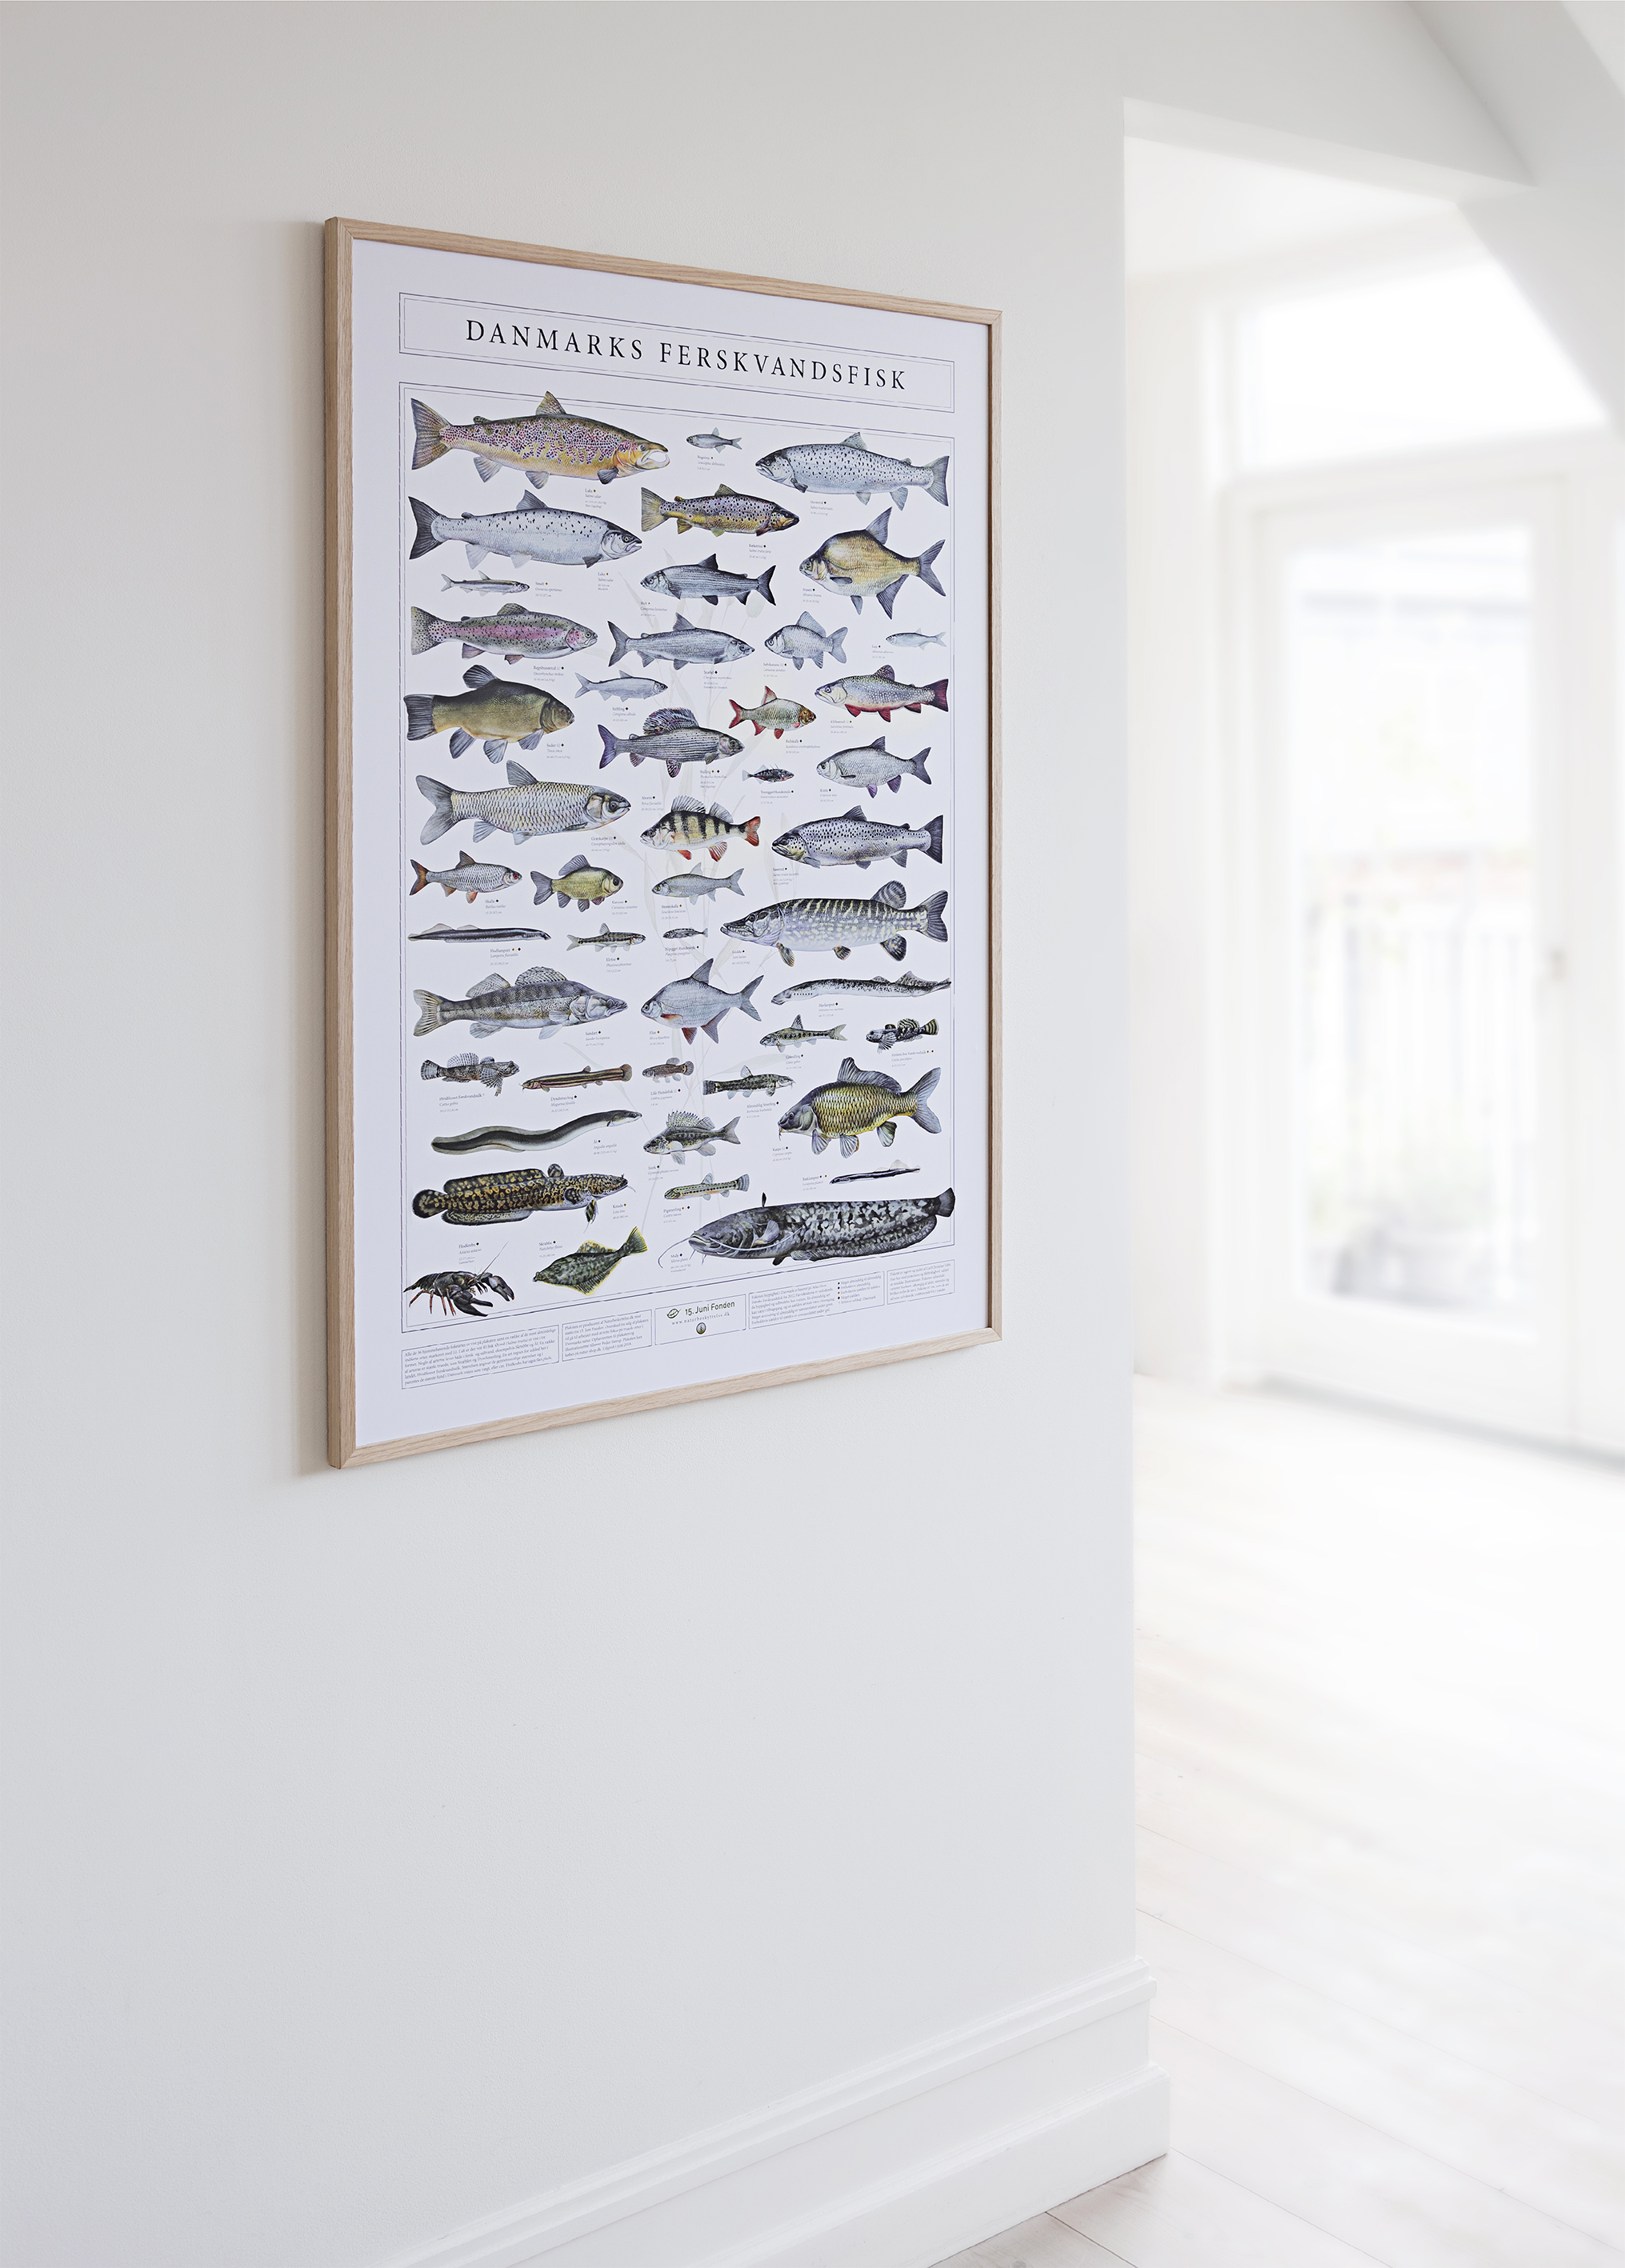 NYHED: første plakat med samtlige Danmarks ferskvandsfisk | NATURBESKYTTELSE.DK